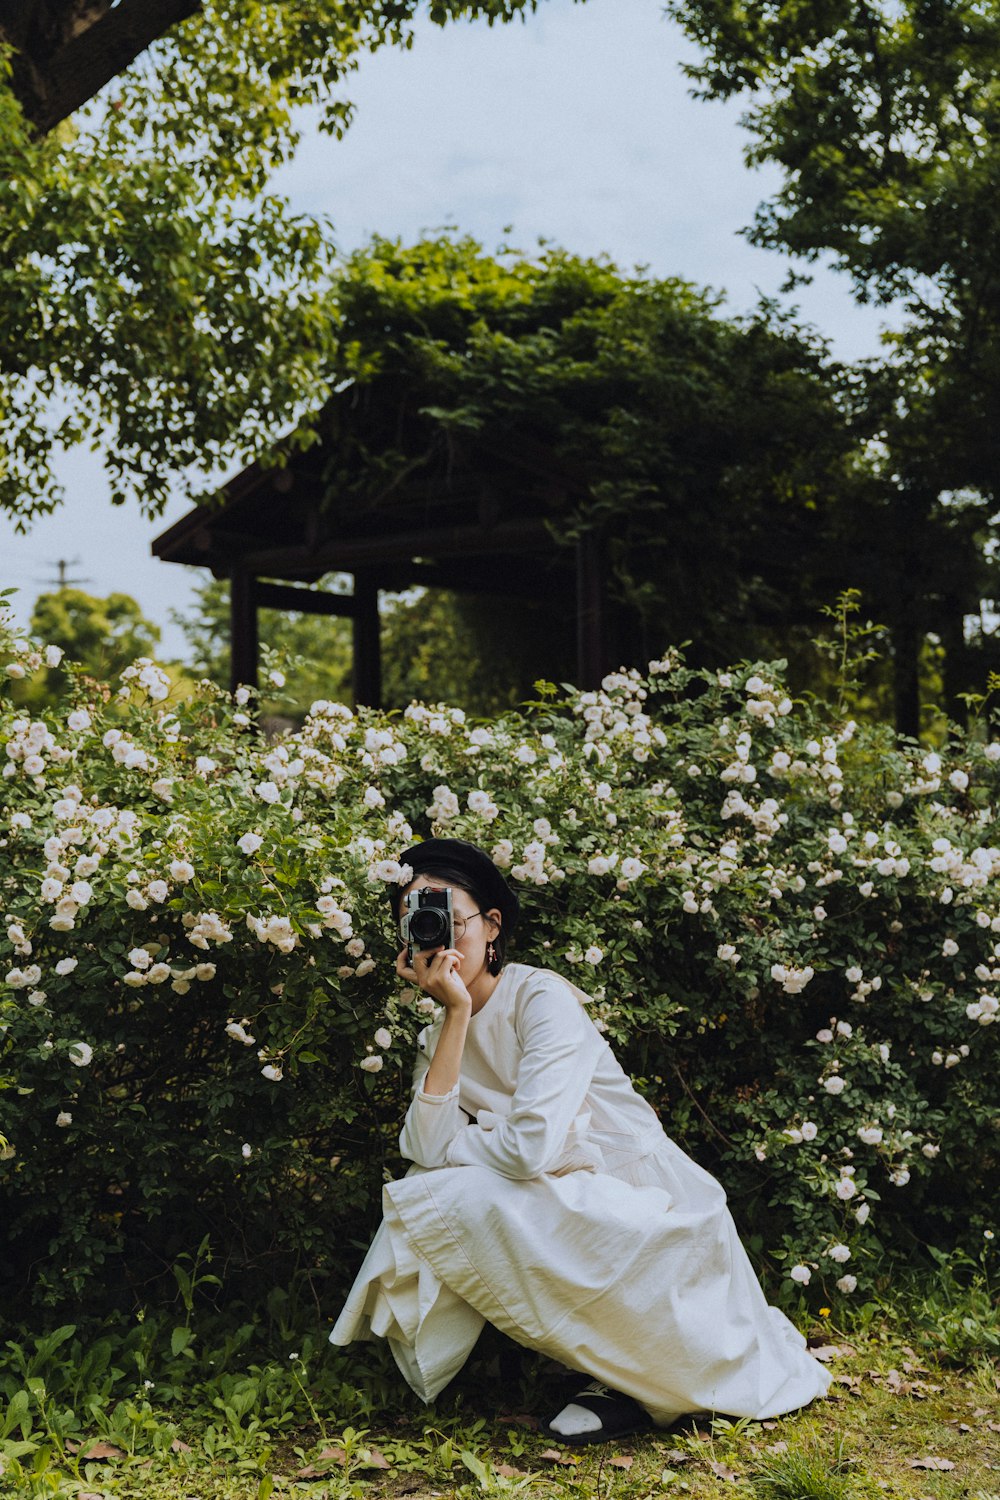 낮 동안 녹색 나무 근처에 서 있는 검은 선글라스를 쓴 흰색 드레스를 입은 여자